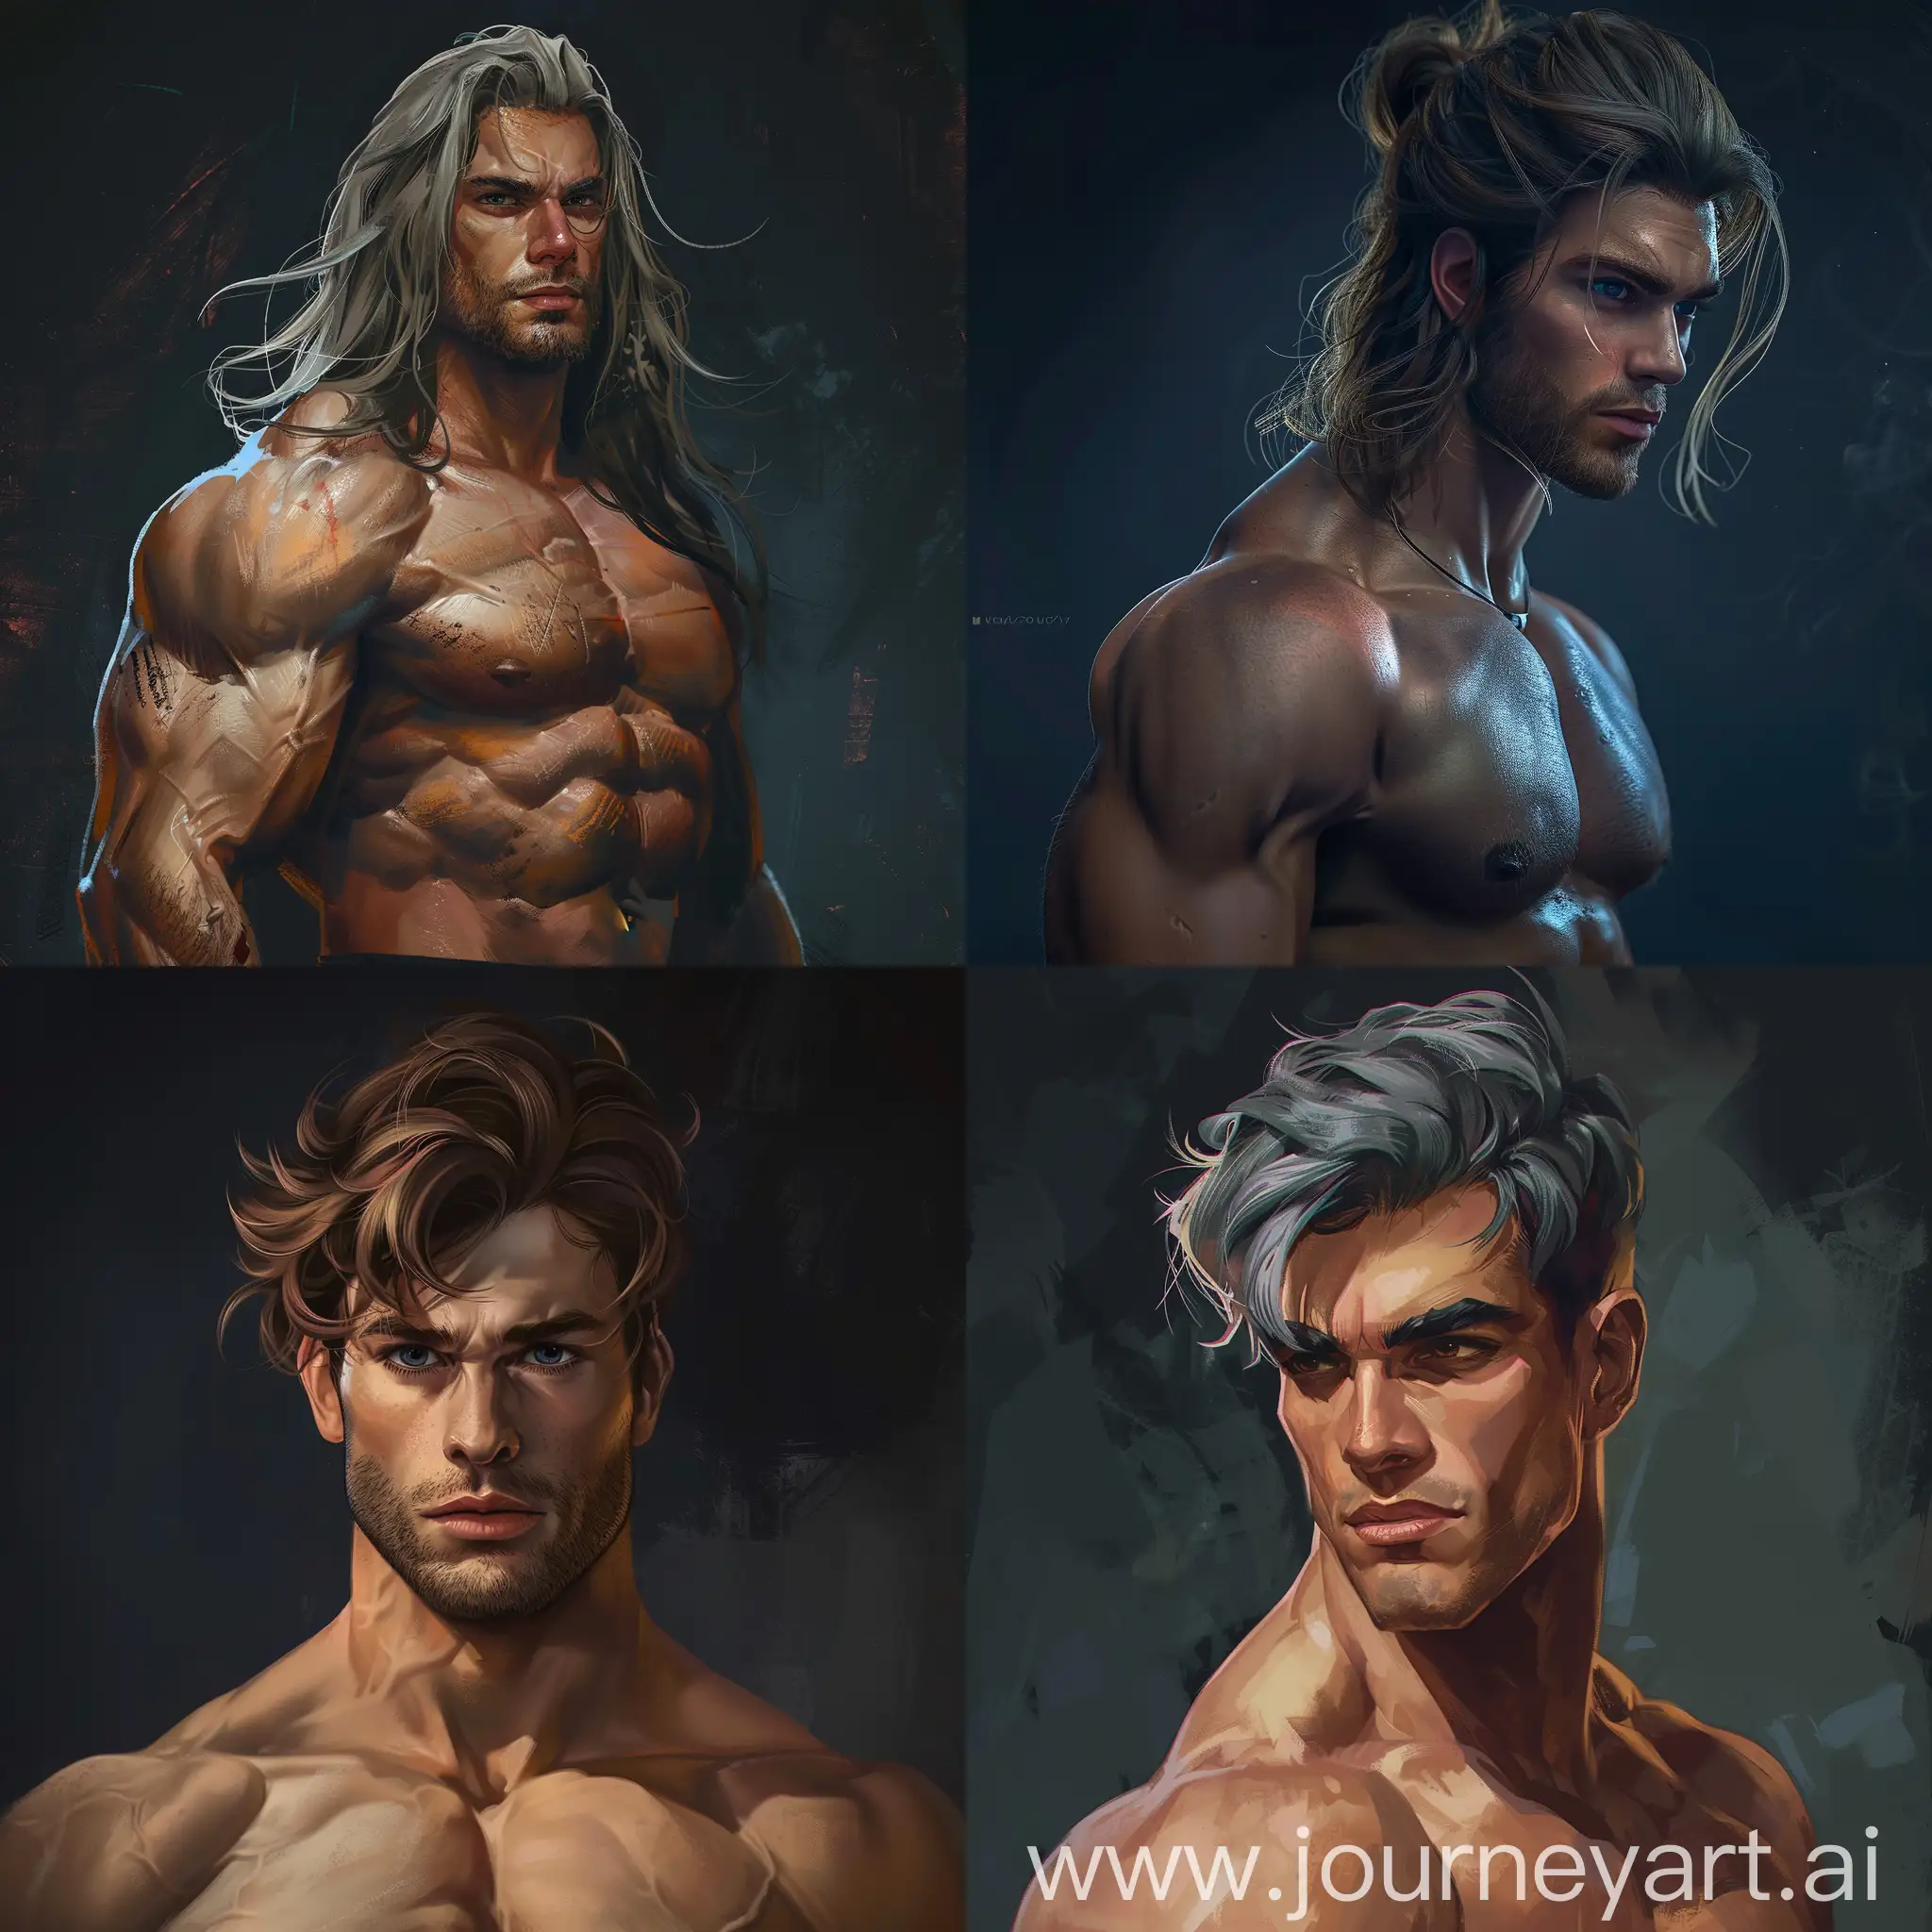 Male character, lush hair, bulk, aesthetic dark background